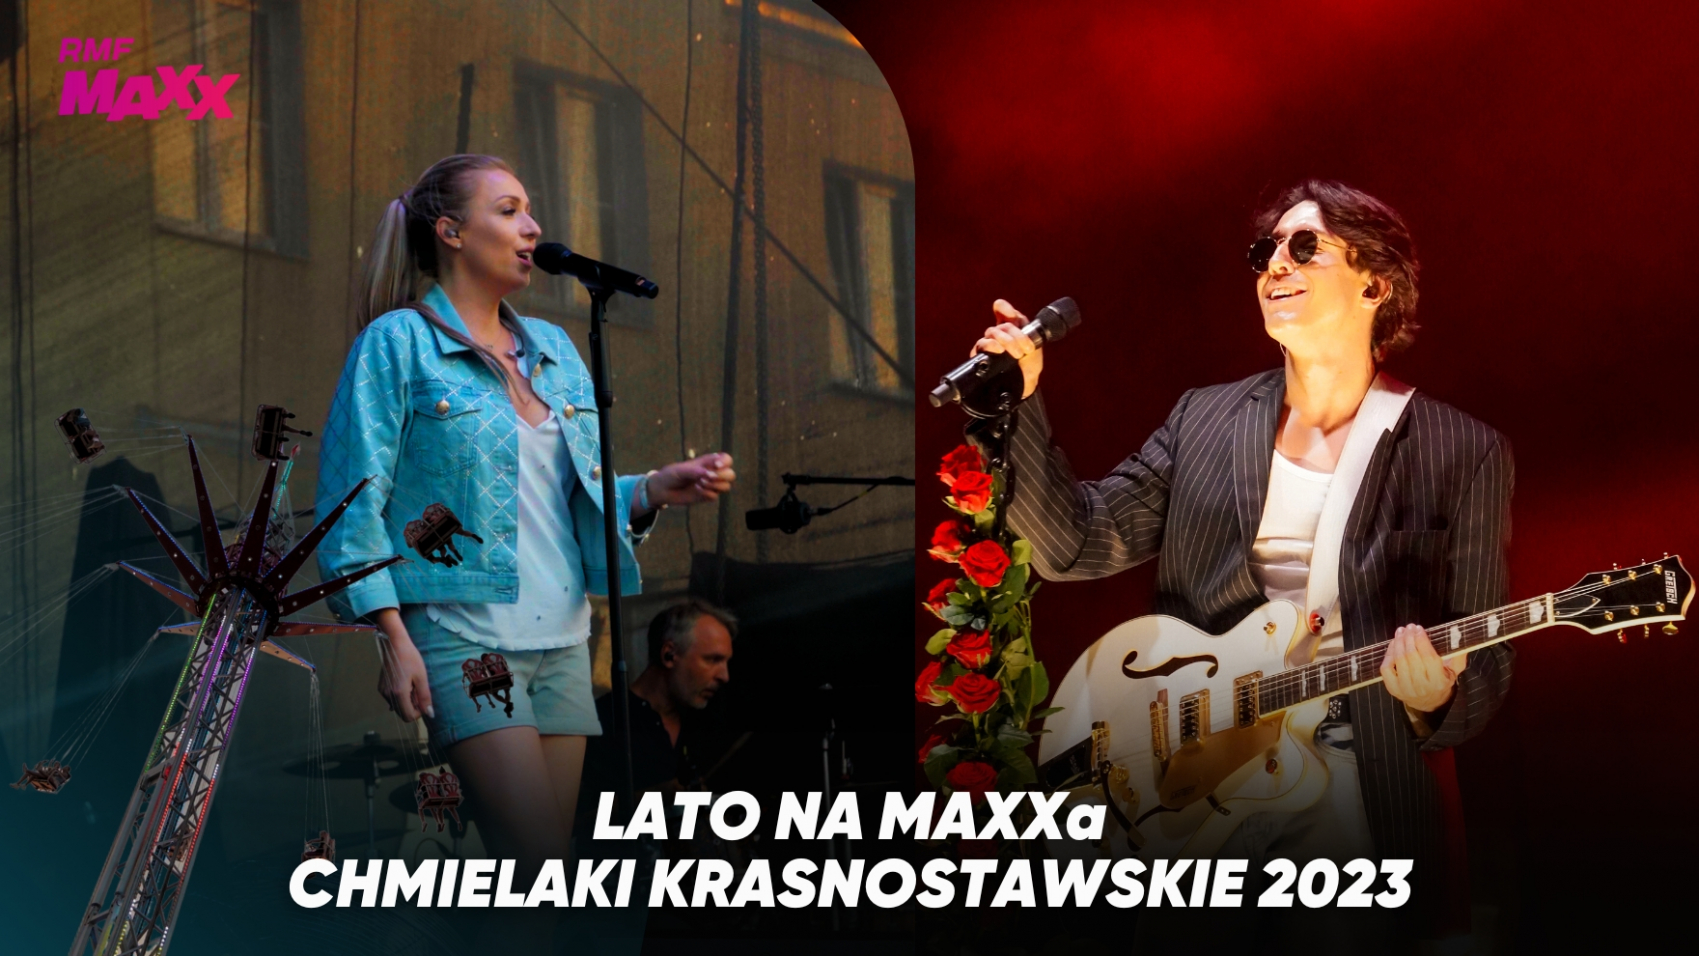 Lato Na MAXXa Chmielaki Krasnostawskie 2023! Koncert Dawida Kwiatkowskiego i Kasi Cerekwickiej!